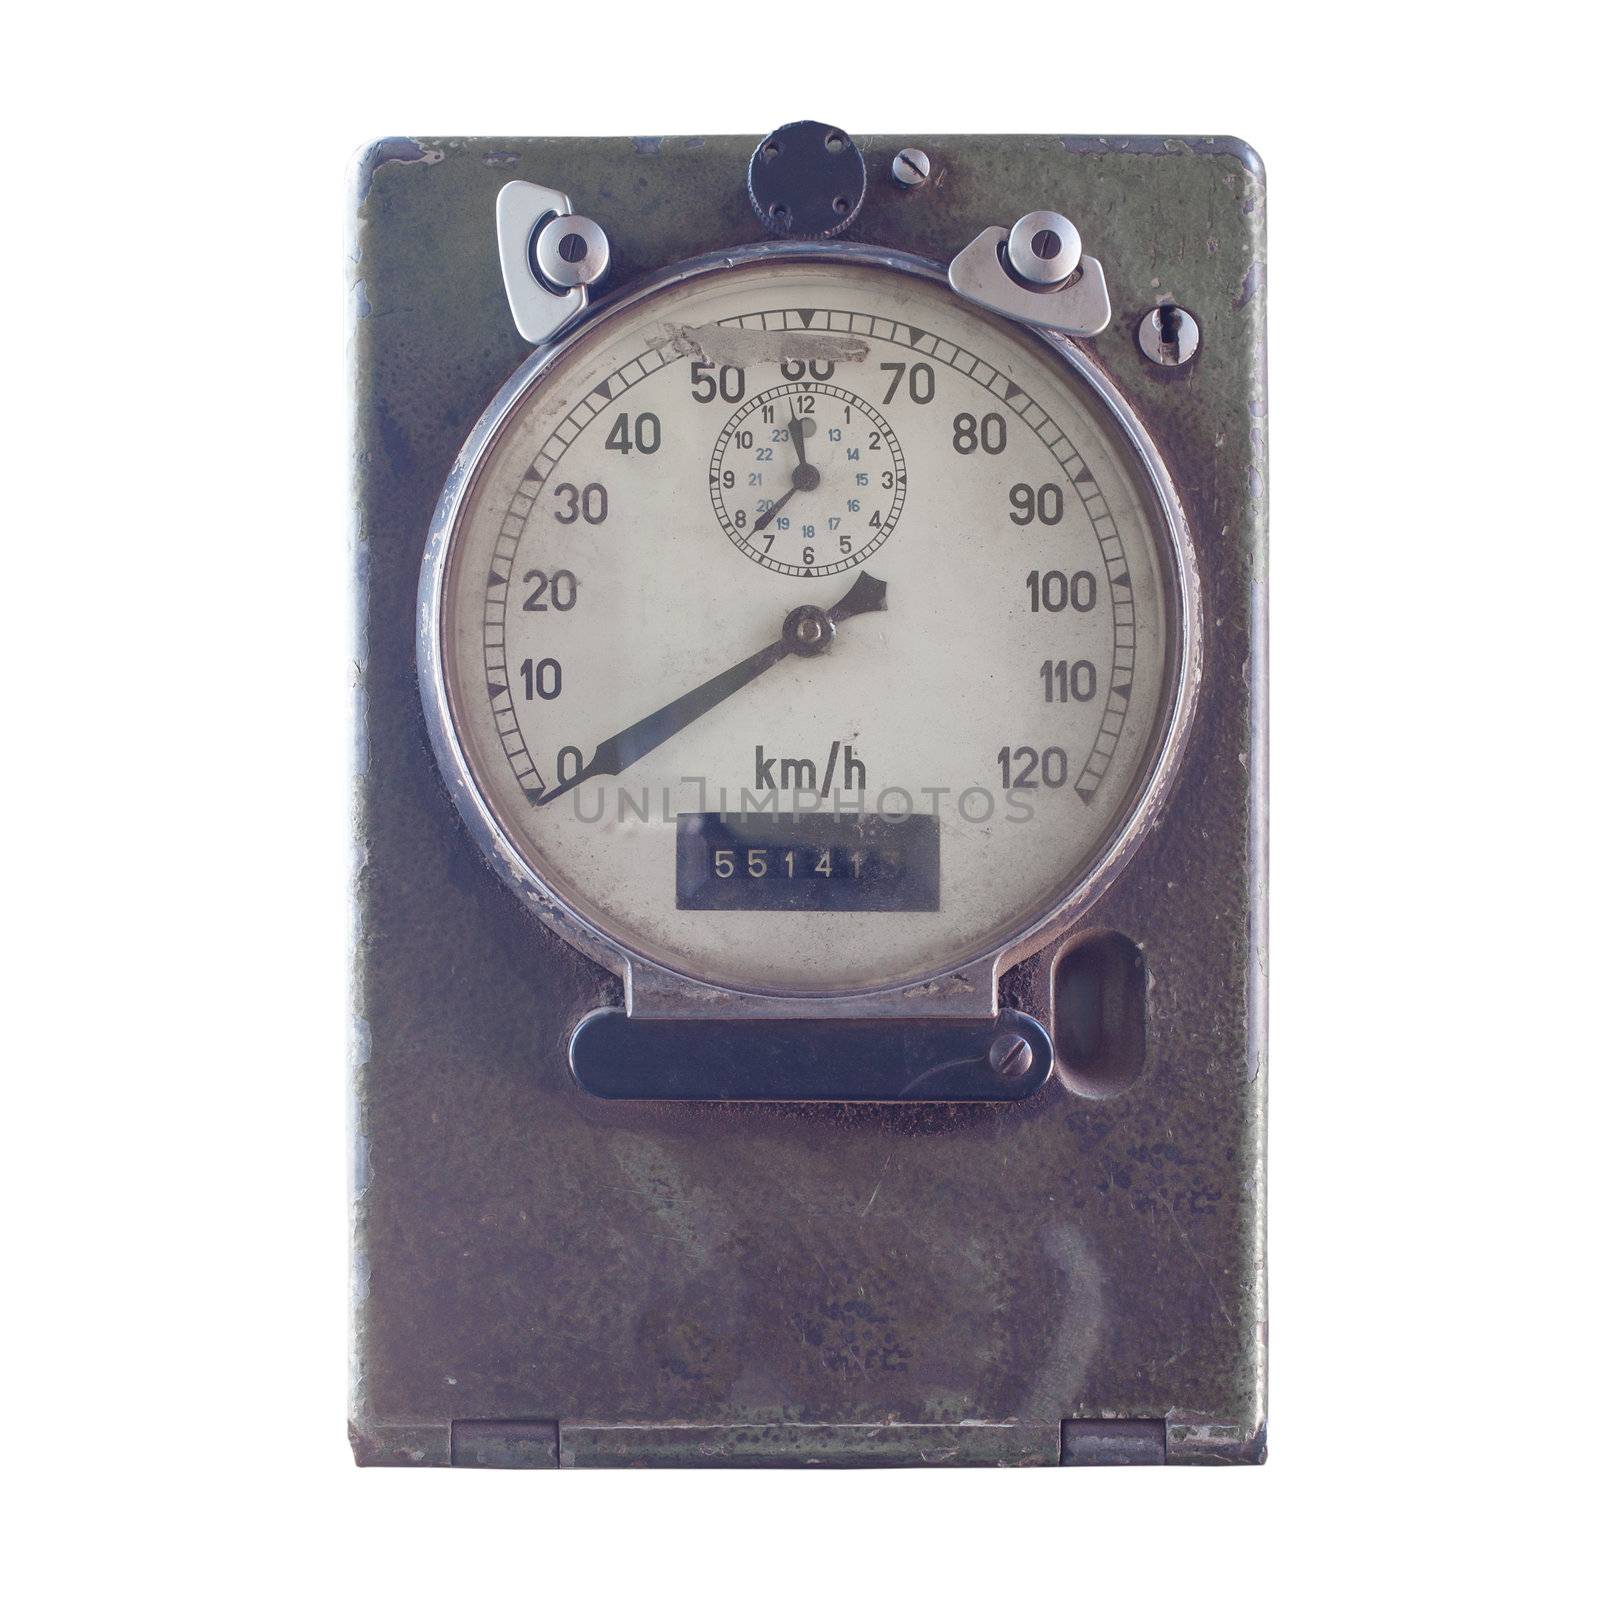 Speed meter or gauge of train, vintage style